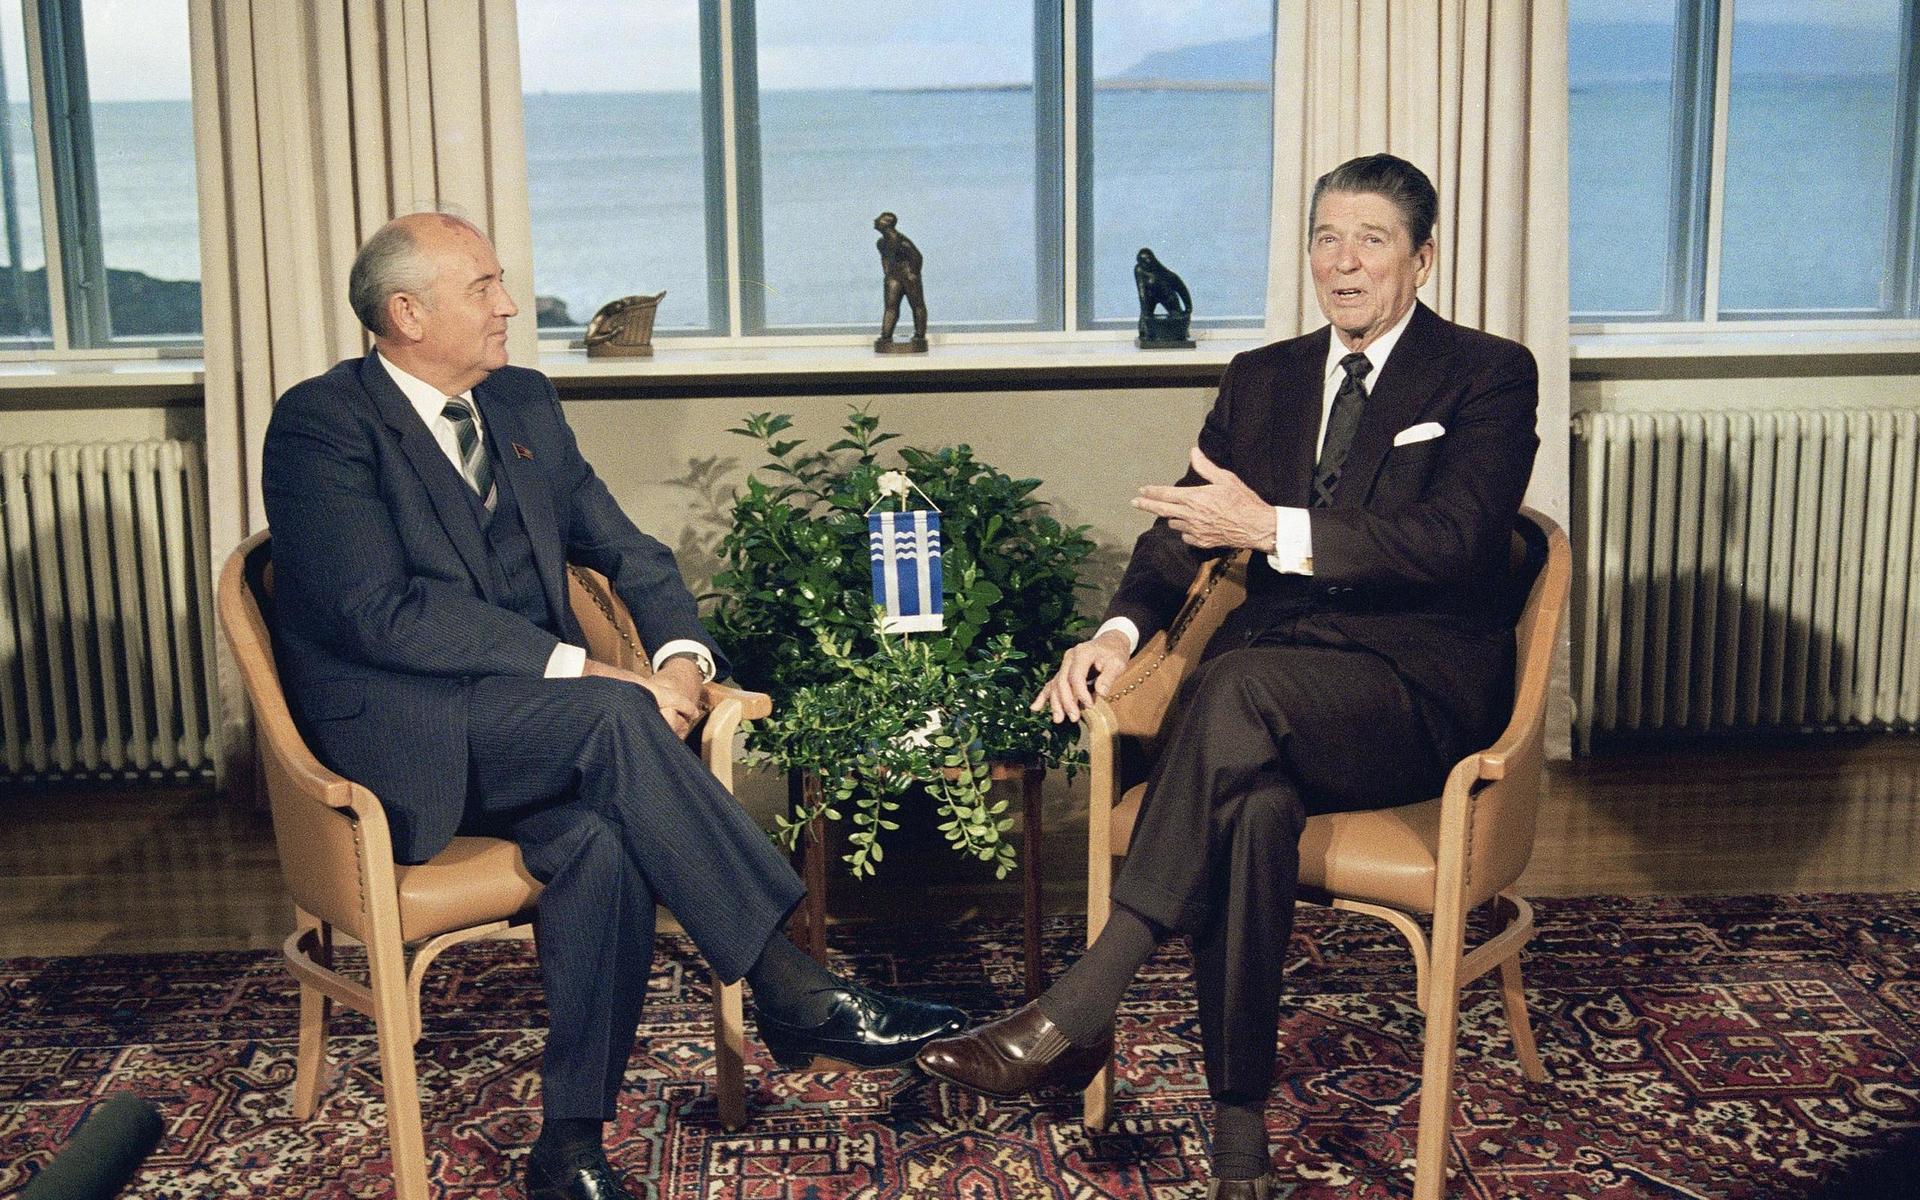 Sovjets ledare Michail Gorbatjov och USA:s president Ronald Reagan vid mötet i huset Höfði på Island. Det historiska mötet lade grunden till Kalla krigets slut. 